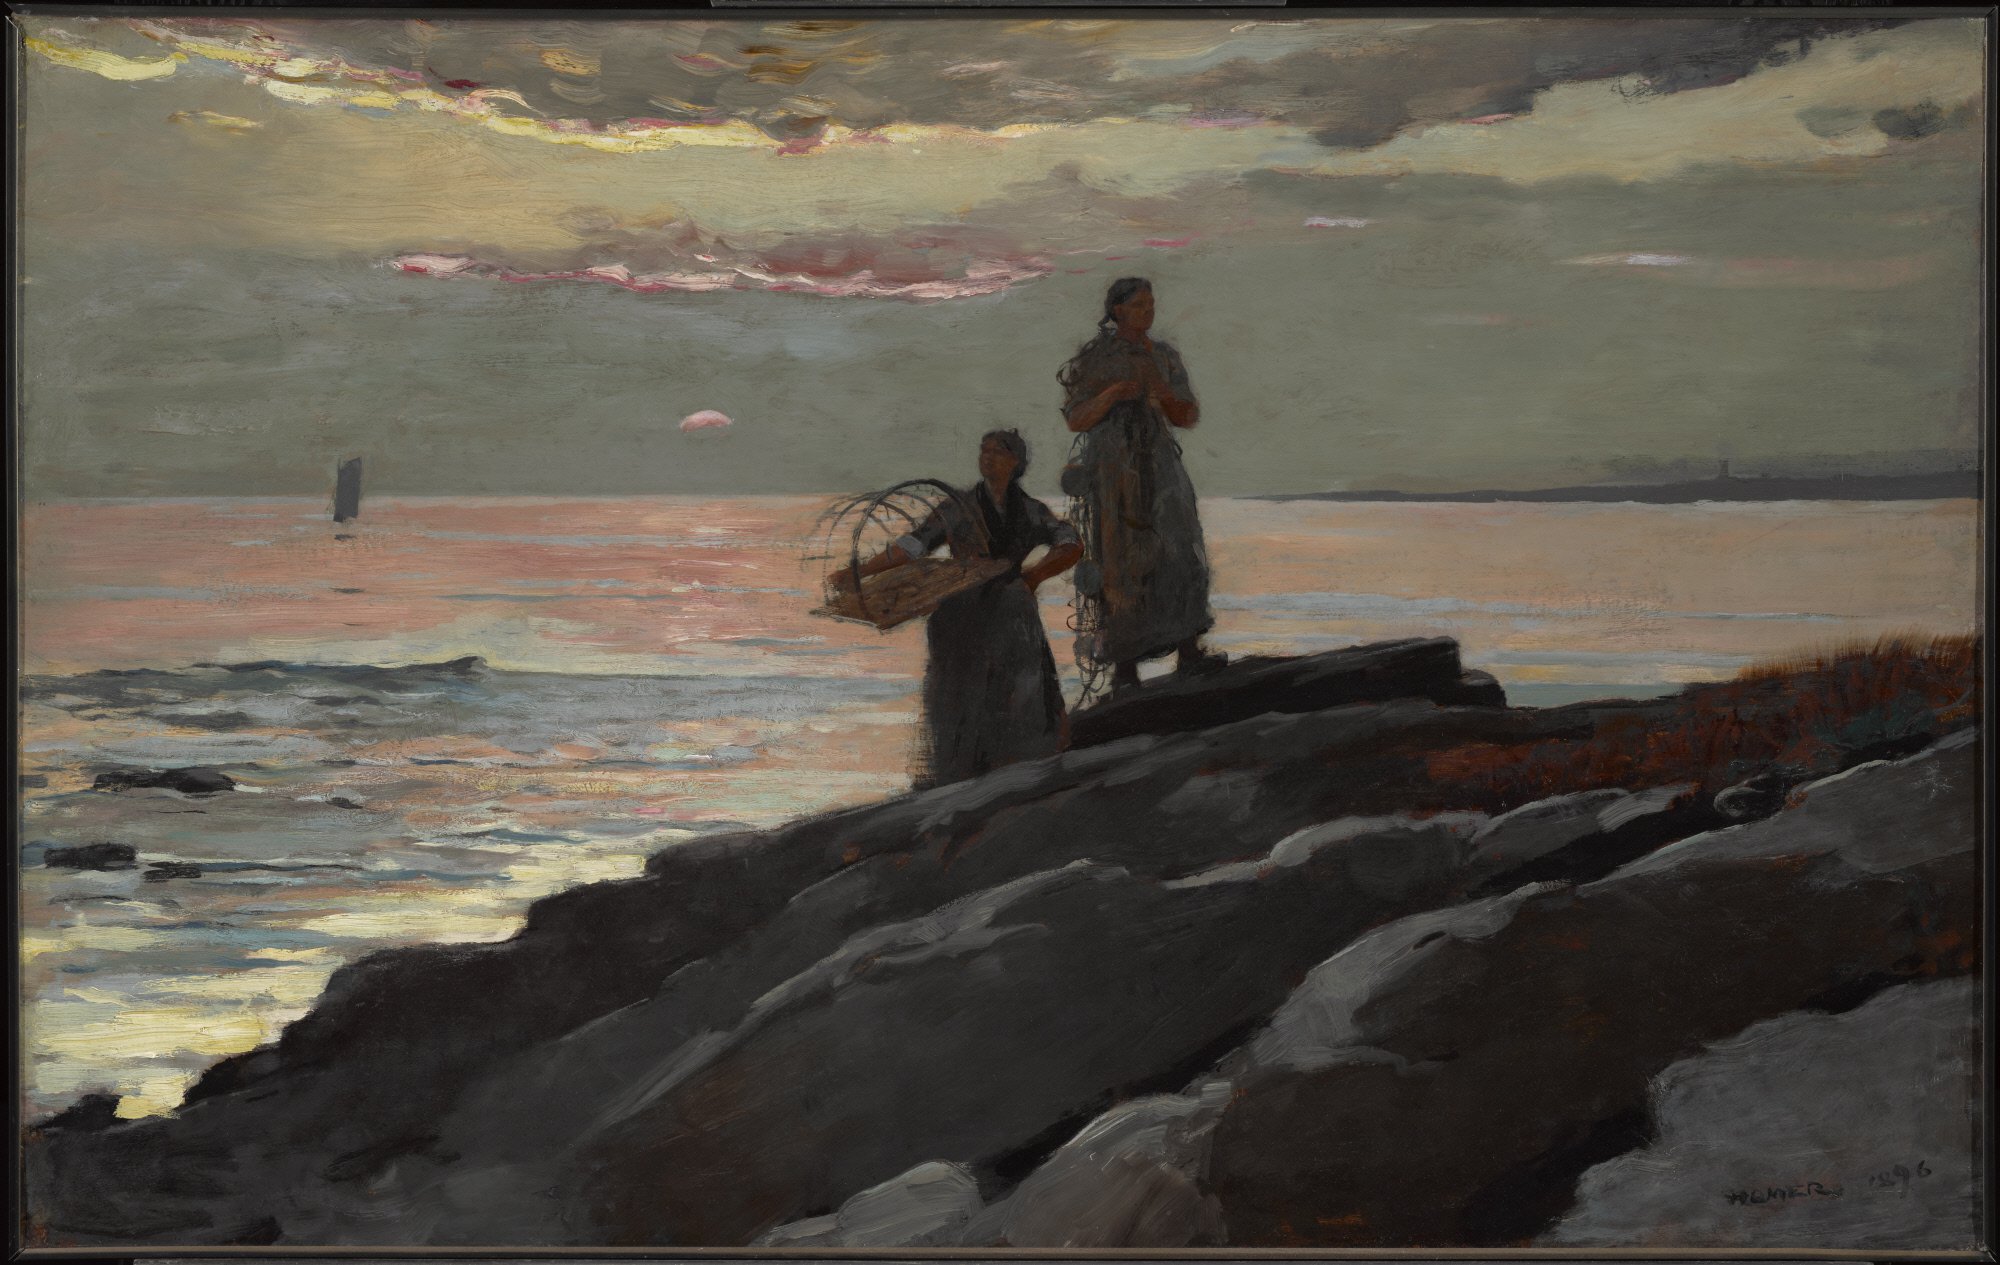 Západ slunce, Saco Bay by Winslow Homer - 1896 -  60,5 x 96,4 cm 